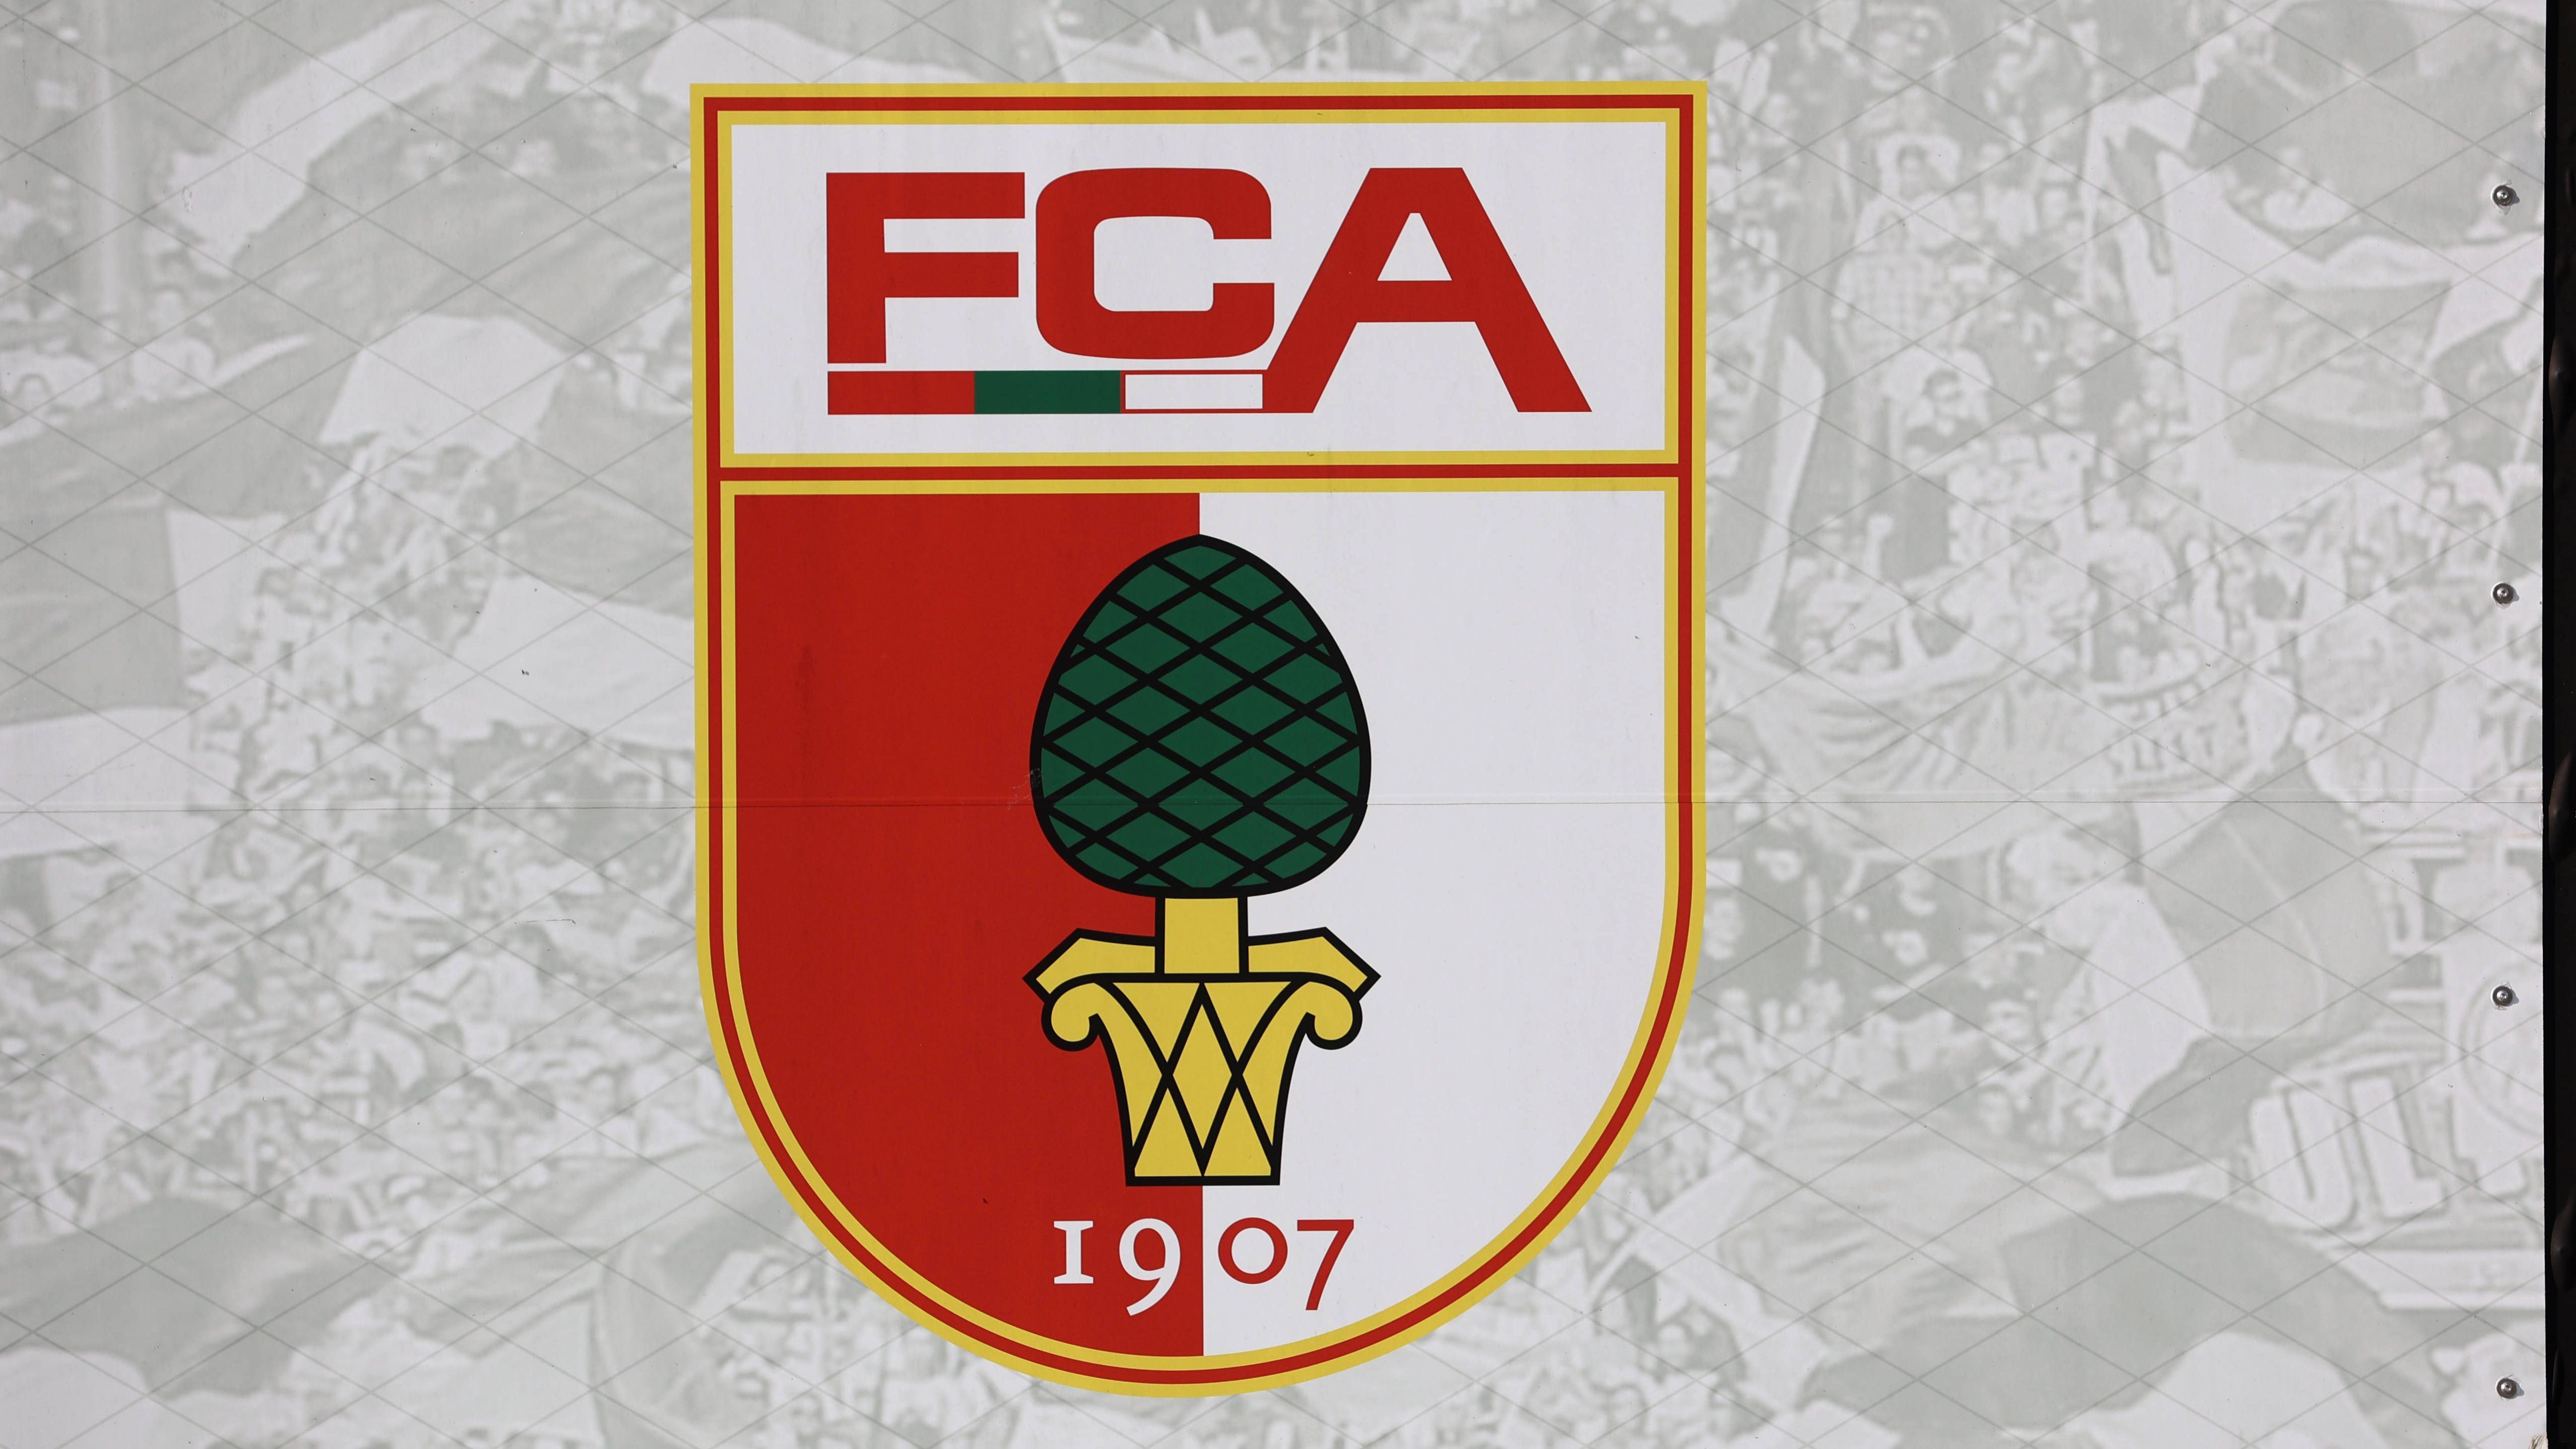 <strong>Platz 13: FC Augsburg (8. August 1907)</strong><br>Am Tag des Friedensfestes 1907 (8. August) wurde der heutige FC Augsburg unter dem Namen "FC Allemania" gegründet. Dieser schloss sich 1909 der Spielabteilung TV 1871 an. Die Fußballer spalteten sich 1921 ab und wurden zum BC Augsburg, welcher nach einer weiteren Fusion 1969 zum FC Augsburg wurde.<br><br><strong>Saisons in der Bundesliga: 12</strong>